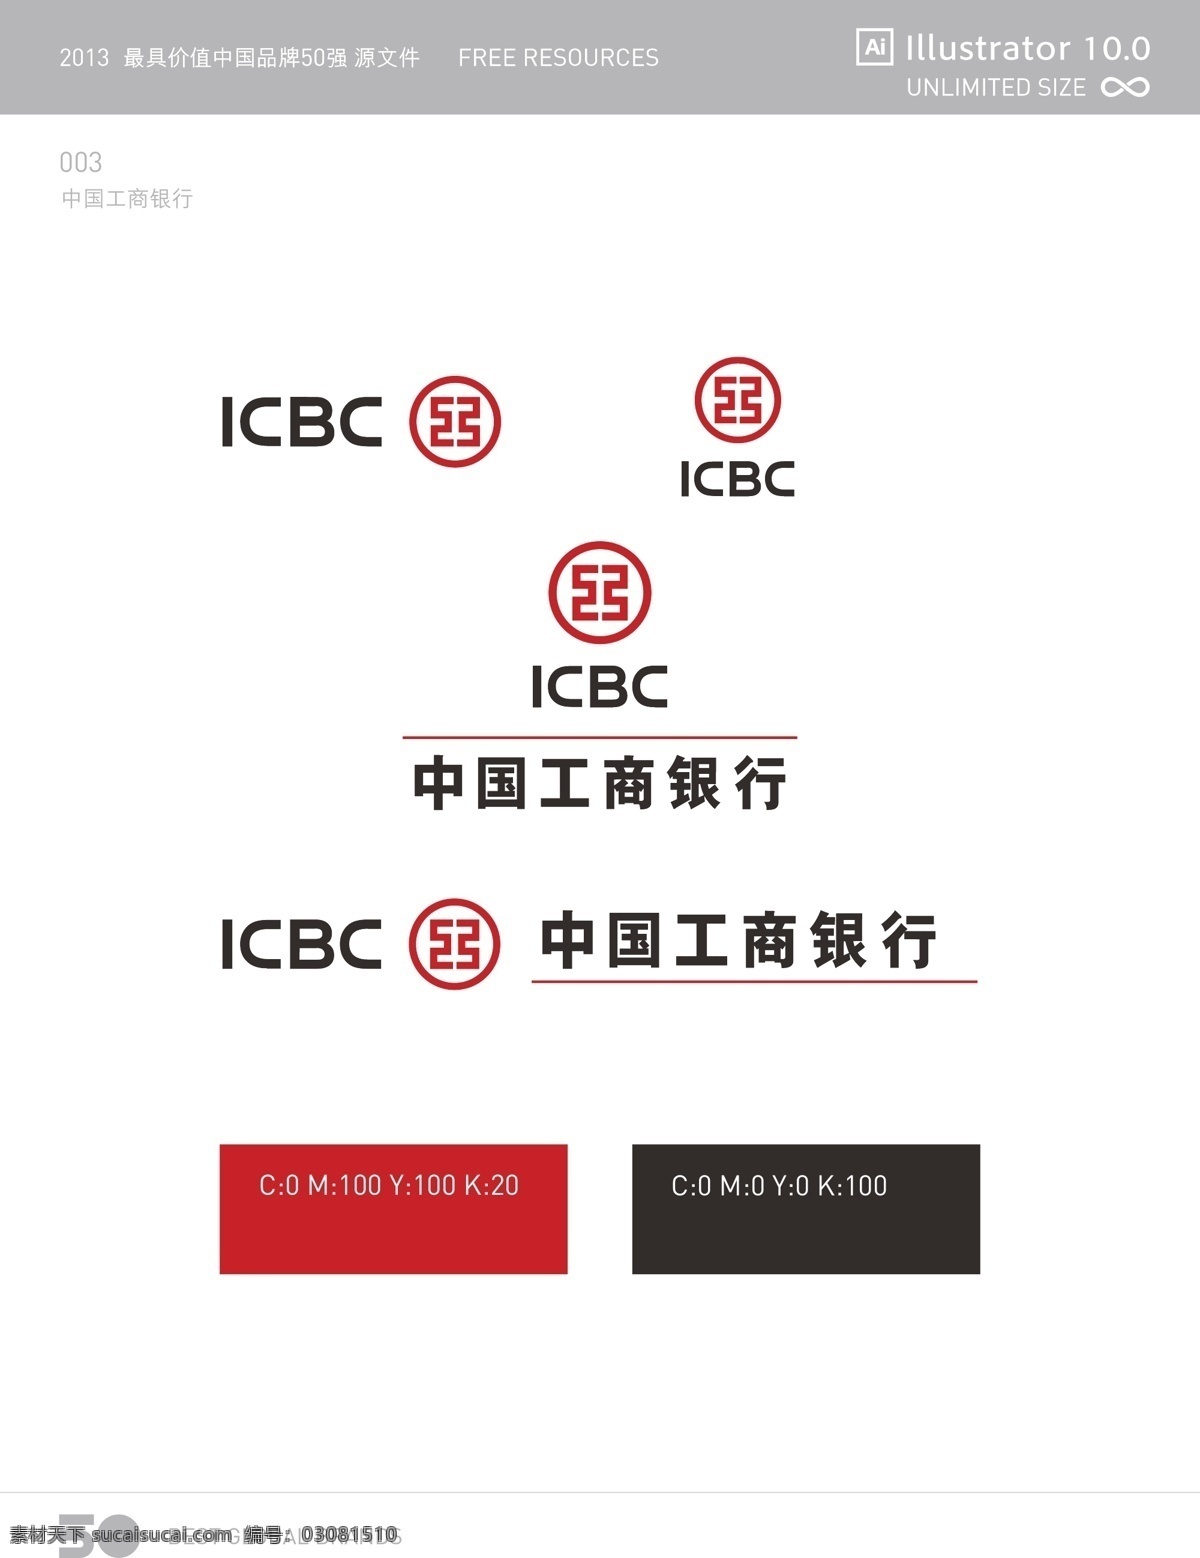 中国工商银行 logo 源文件 2013 中国品牌 强 标志 标准文件 矢量 ai格式 标准色 白色